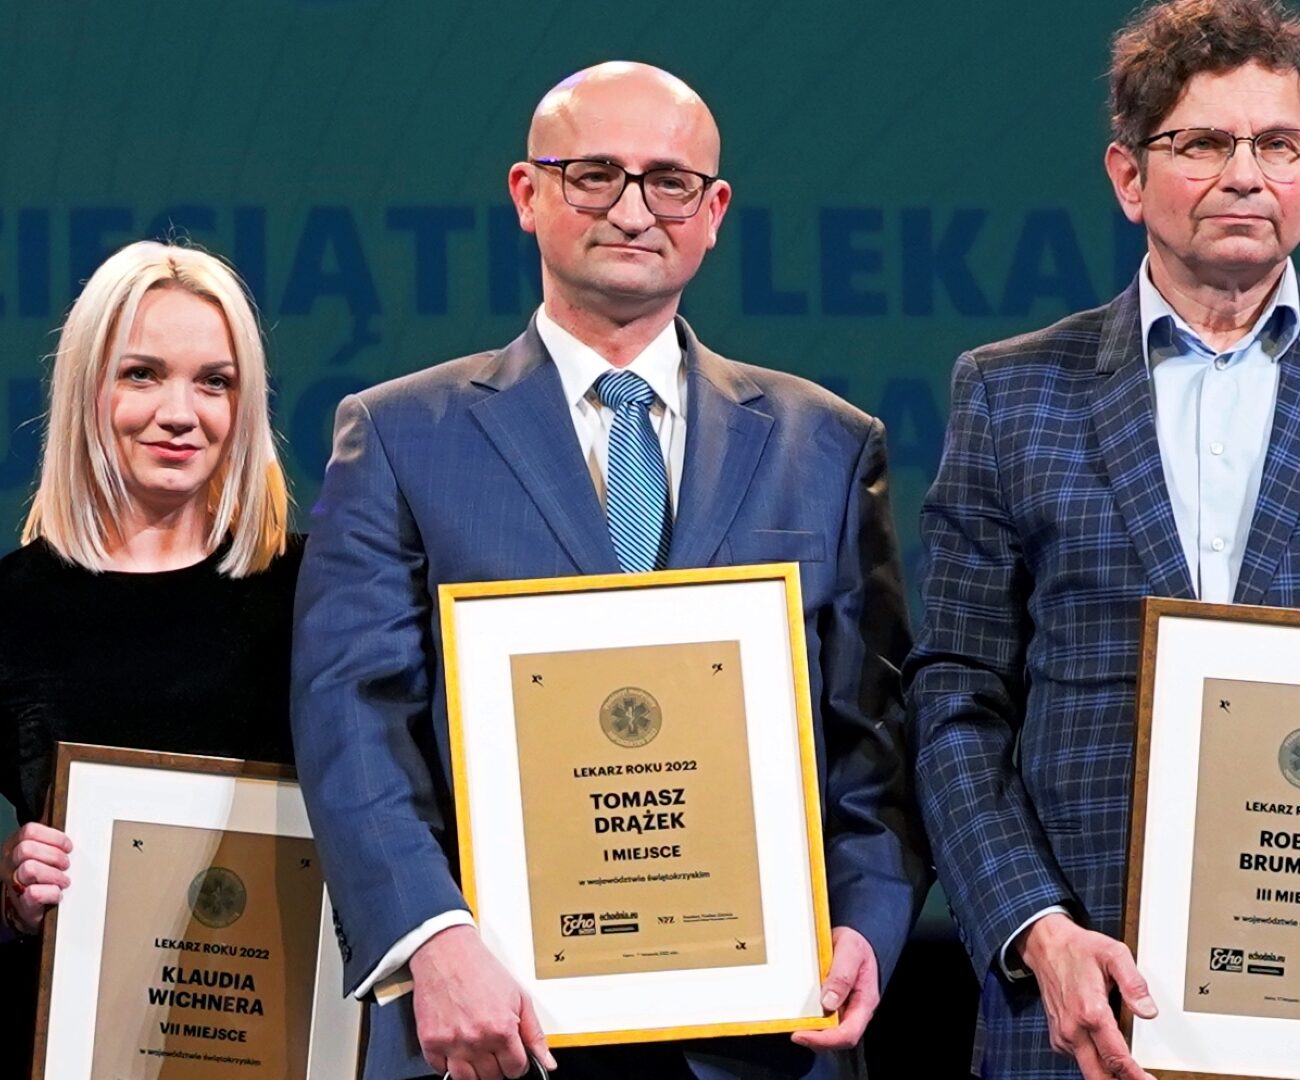 Laureaci plebiscytu "Lekarz Roku". Fotografia przedstawia trzech mężczyzn i jedną kobietę trzymających wyróżnienia.